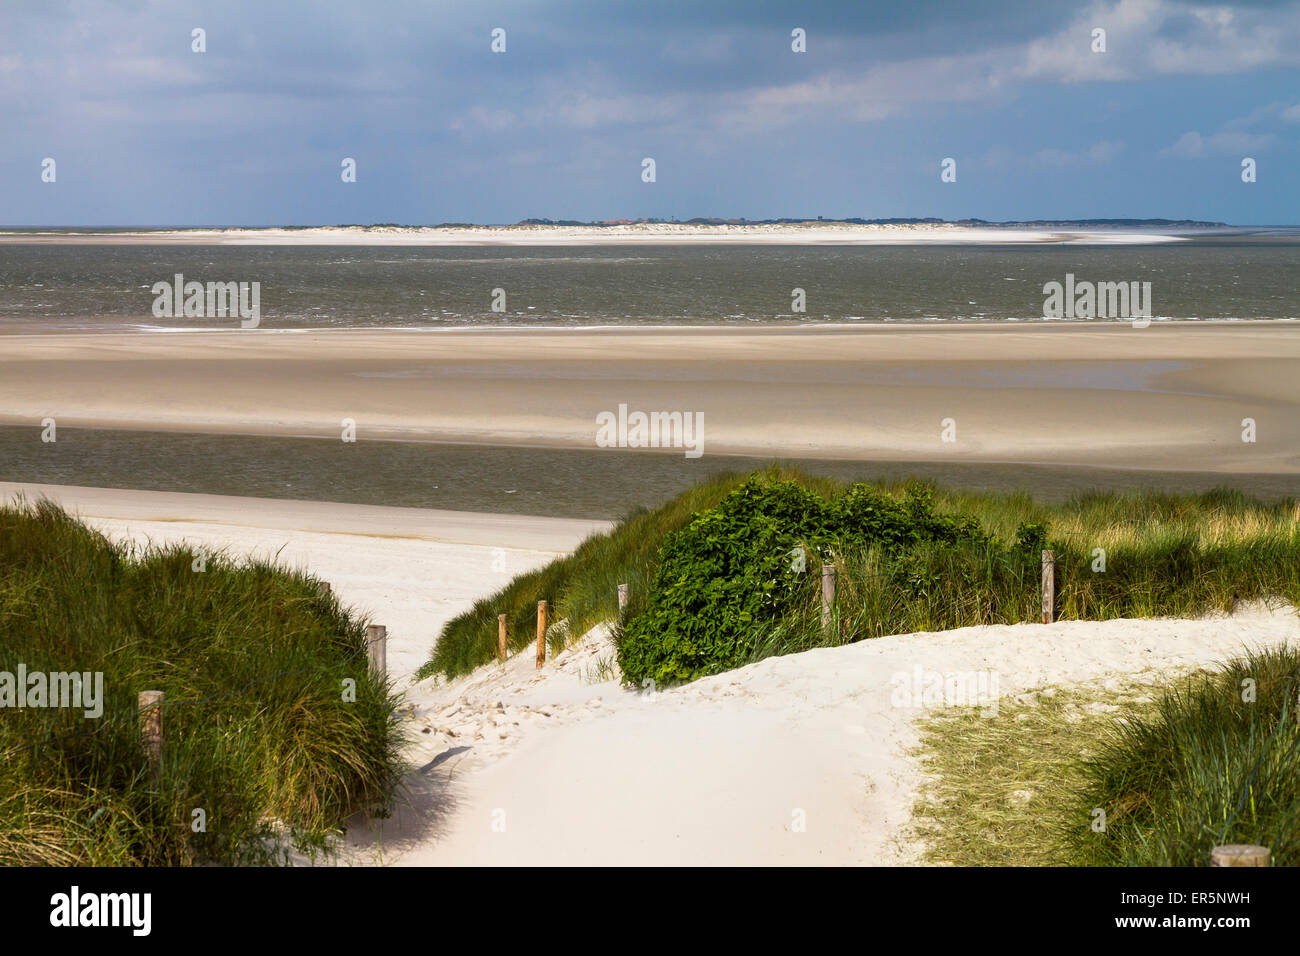 Dune e spiaggia, vista Baltrum Island, isola di Langeoog, parco nazionale, sito Patrimonio Mondiale dell'Unesco, il Mare del Nord, Est Frisone ISL Foto Stock